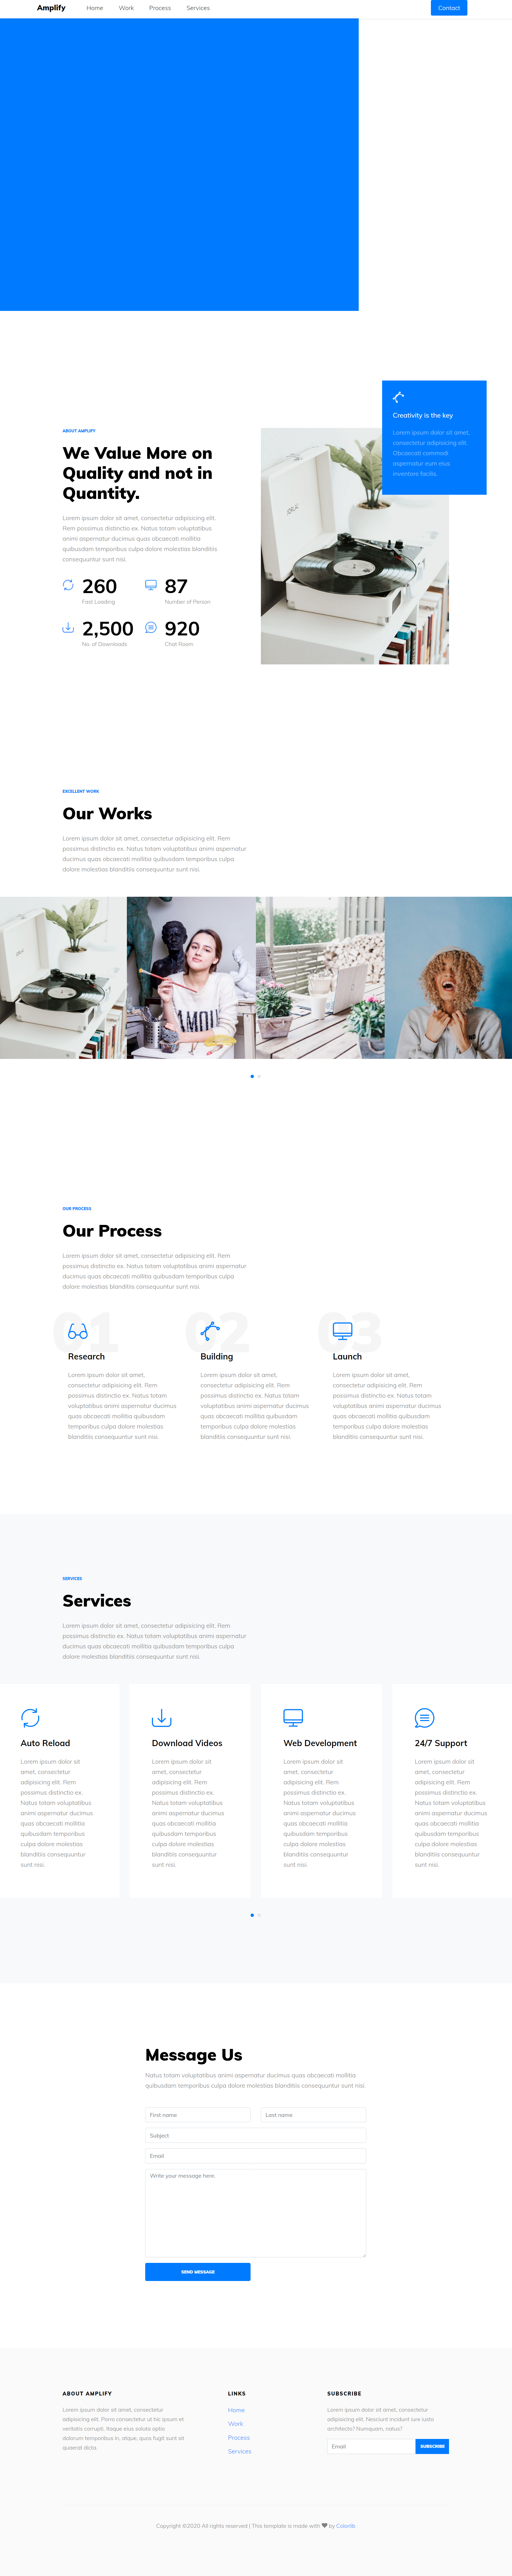 蓝色简洁风格响应式企业产品管理网页模板